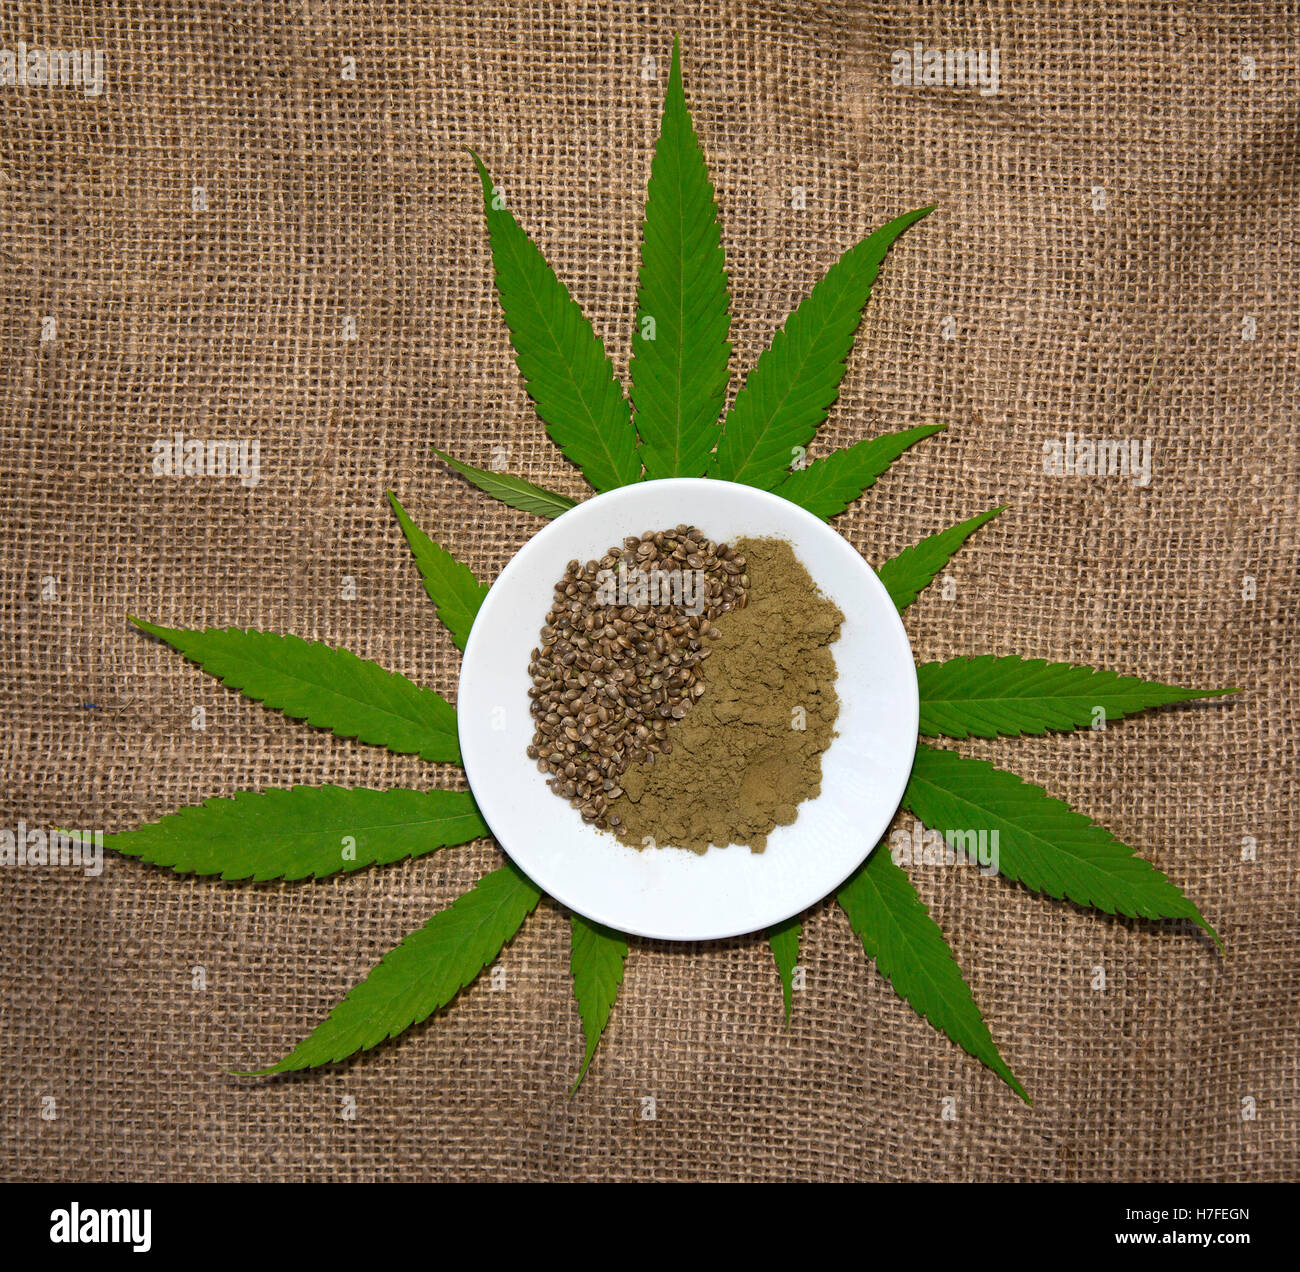 Hojas de cáñamo (Cannabis) con semillas de cáñamo y tierra hempseed Foto de stock